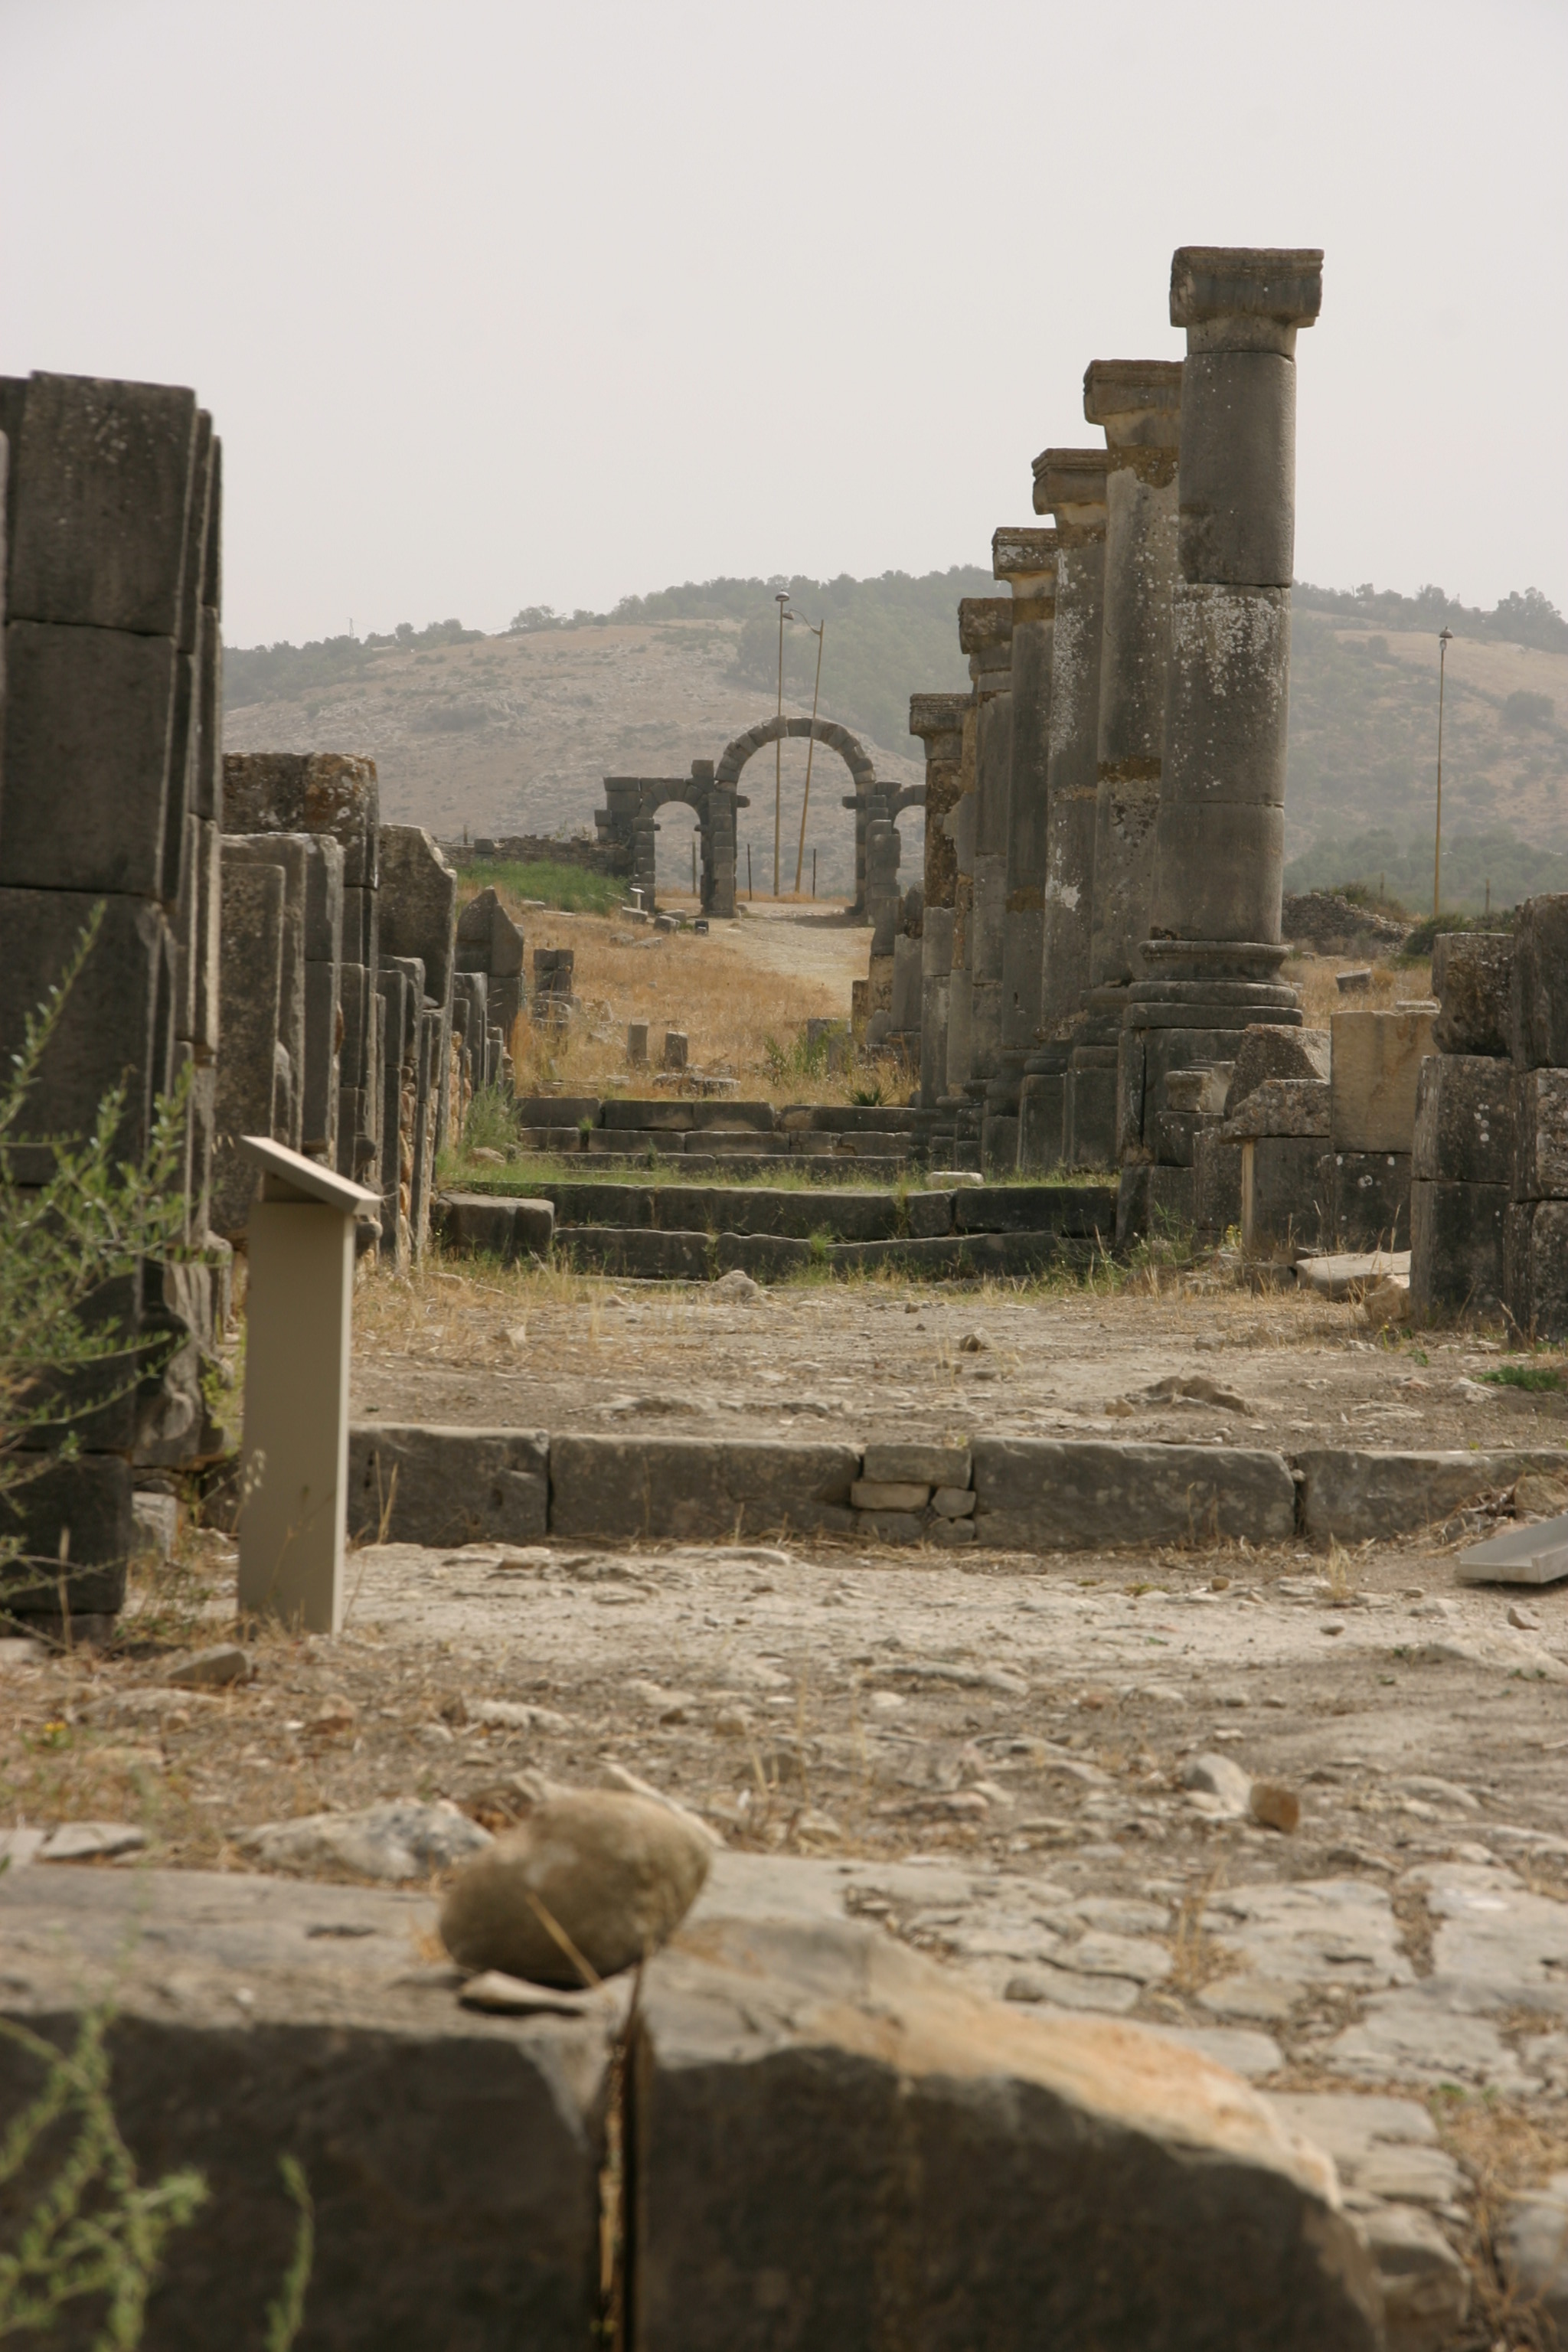 A római kori Volubilis az ország legjobban megmaradt romvárosa, a fekete afrikai területeket Európával összekötő karavánútvonal fontos állomásaként gazdagodott meg, majd a gazdagságát a karavánútvonal áthelyeződésével vesztette el, és nem sokkal utána el is néptelenedett